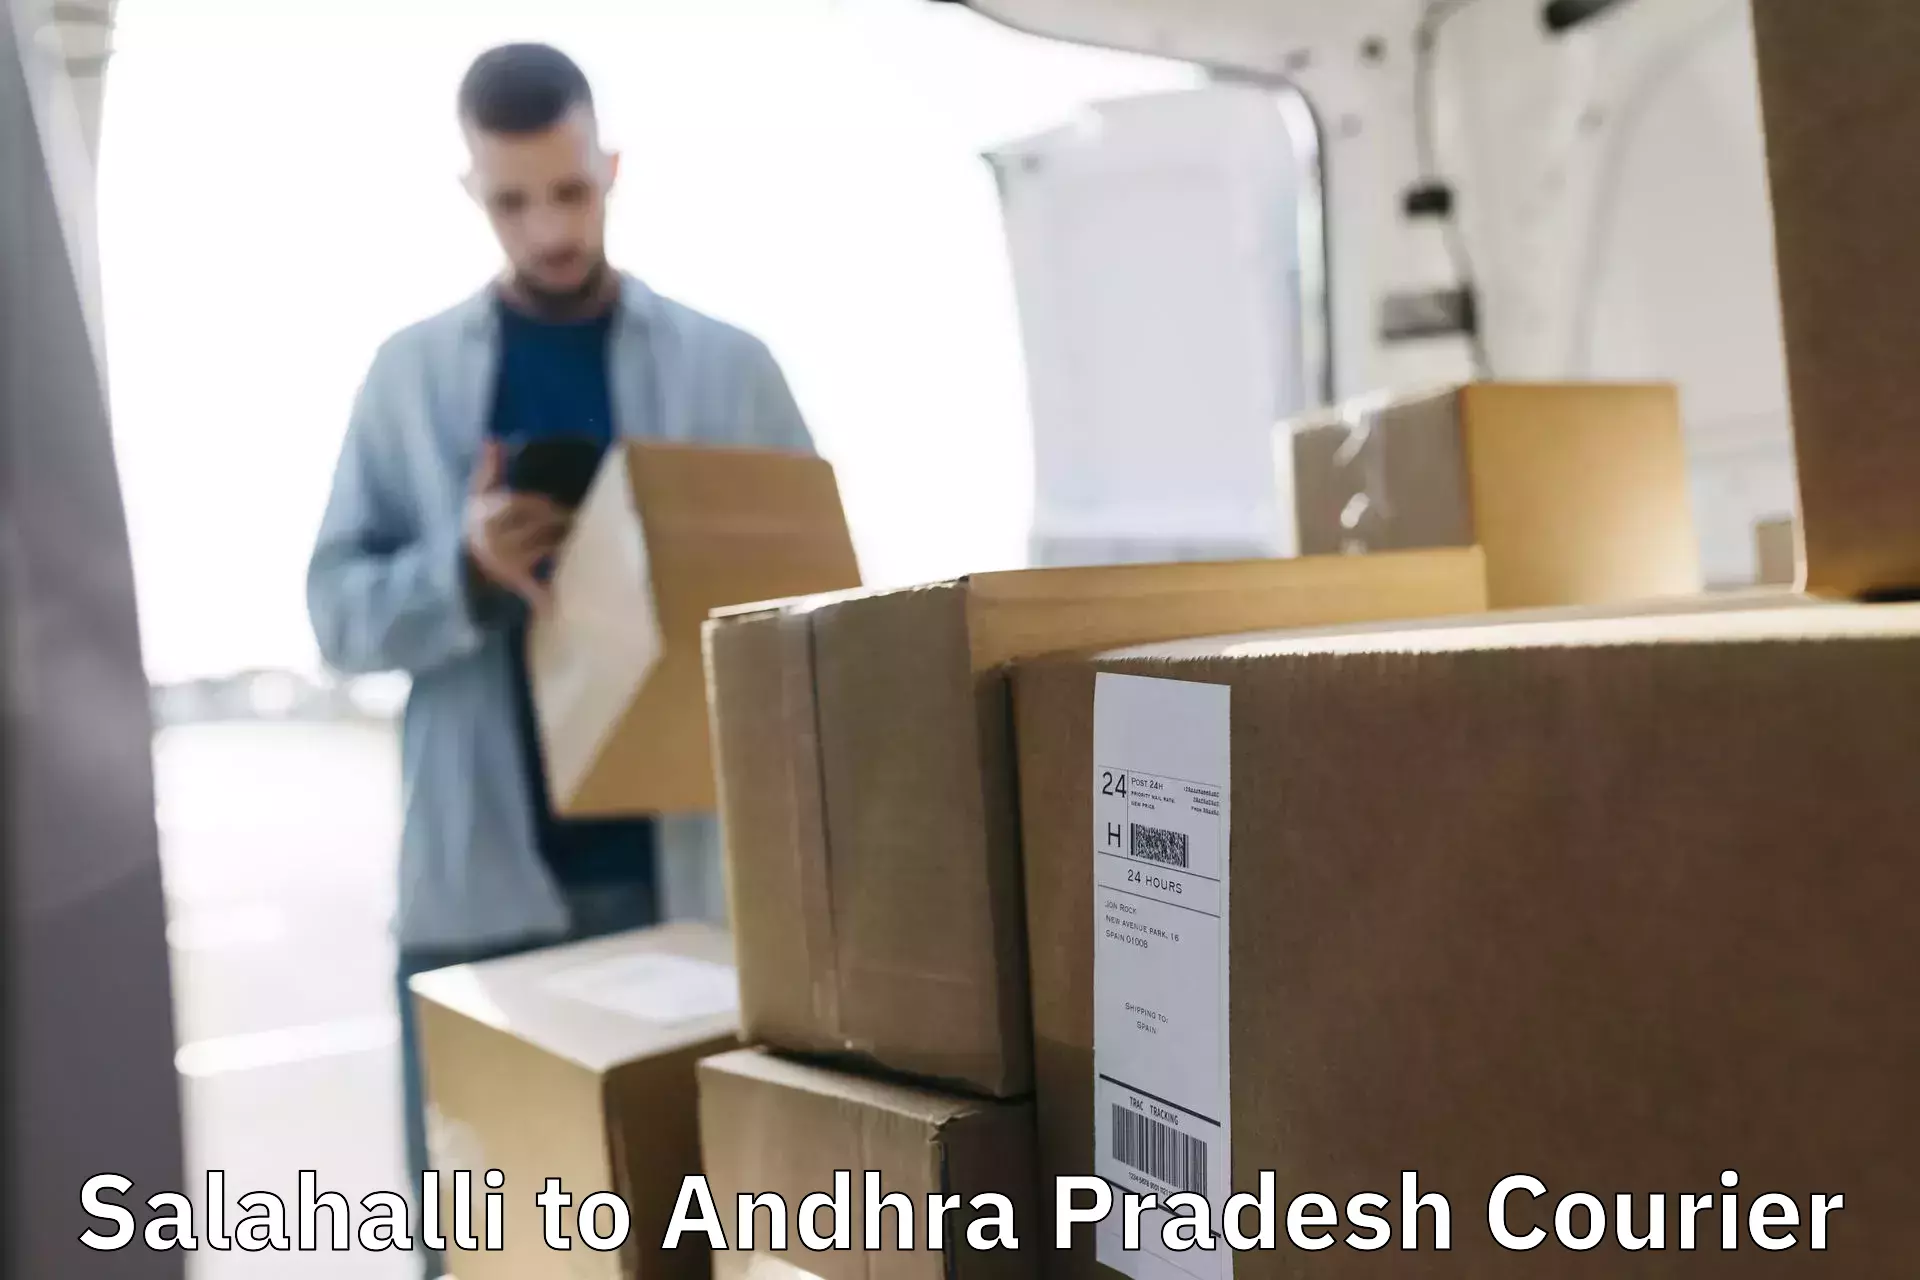 Global courier networks Salahalli to Andhra Pradesh